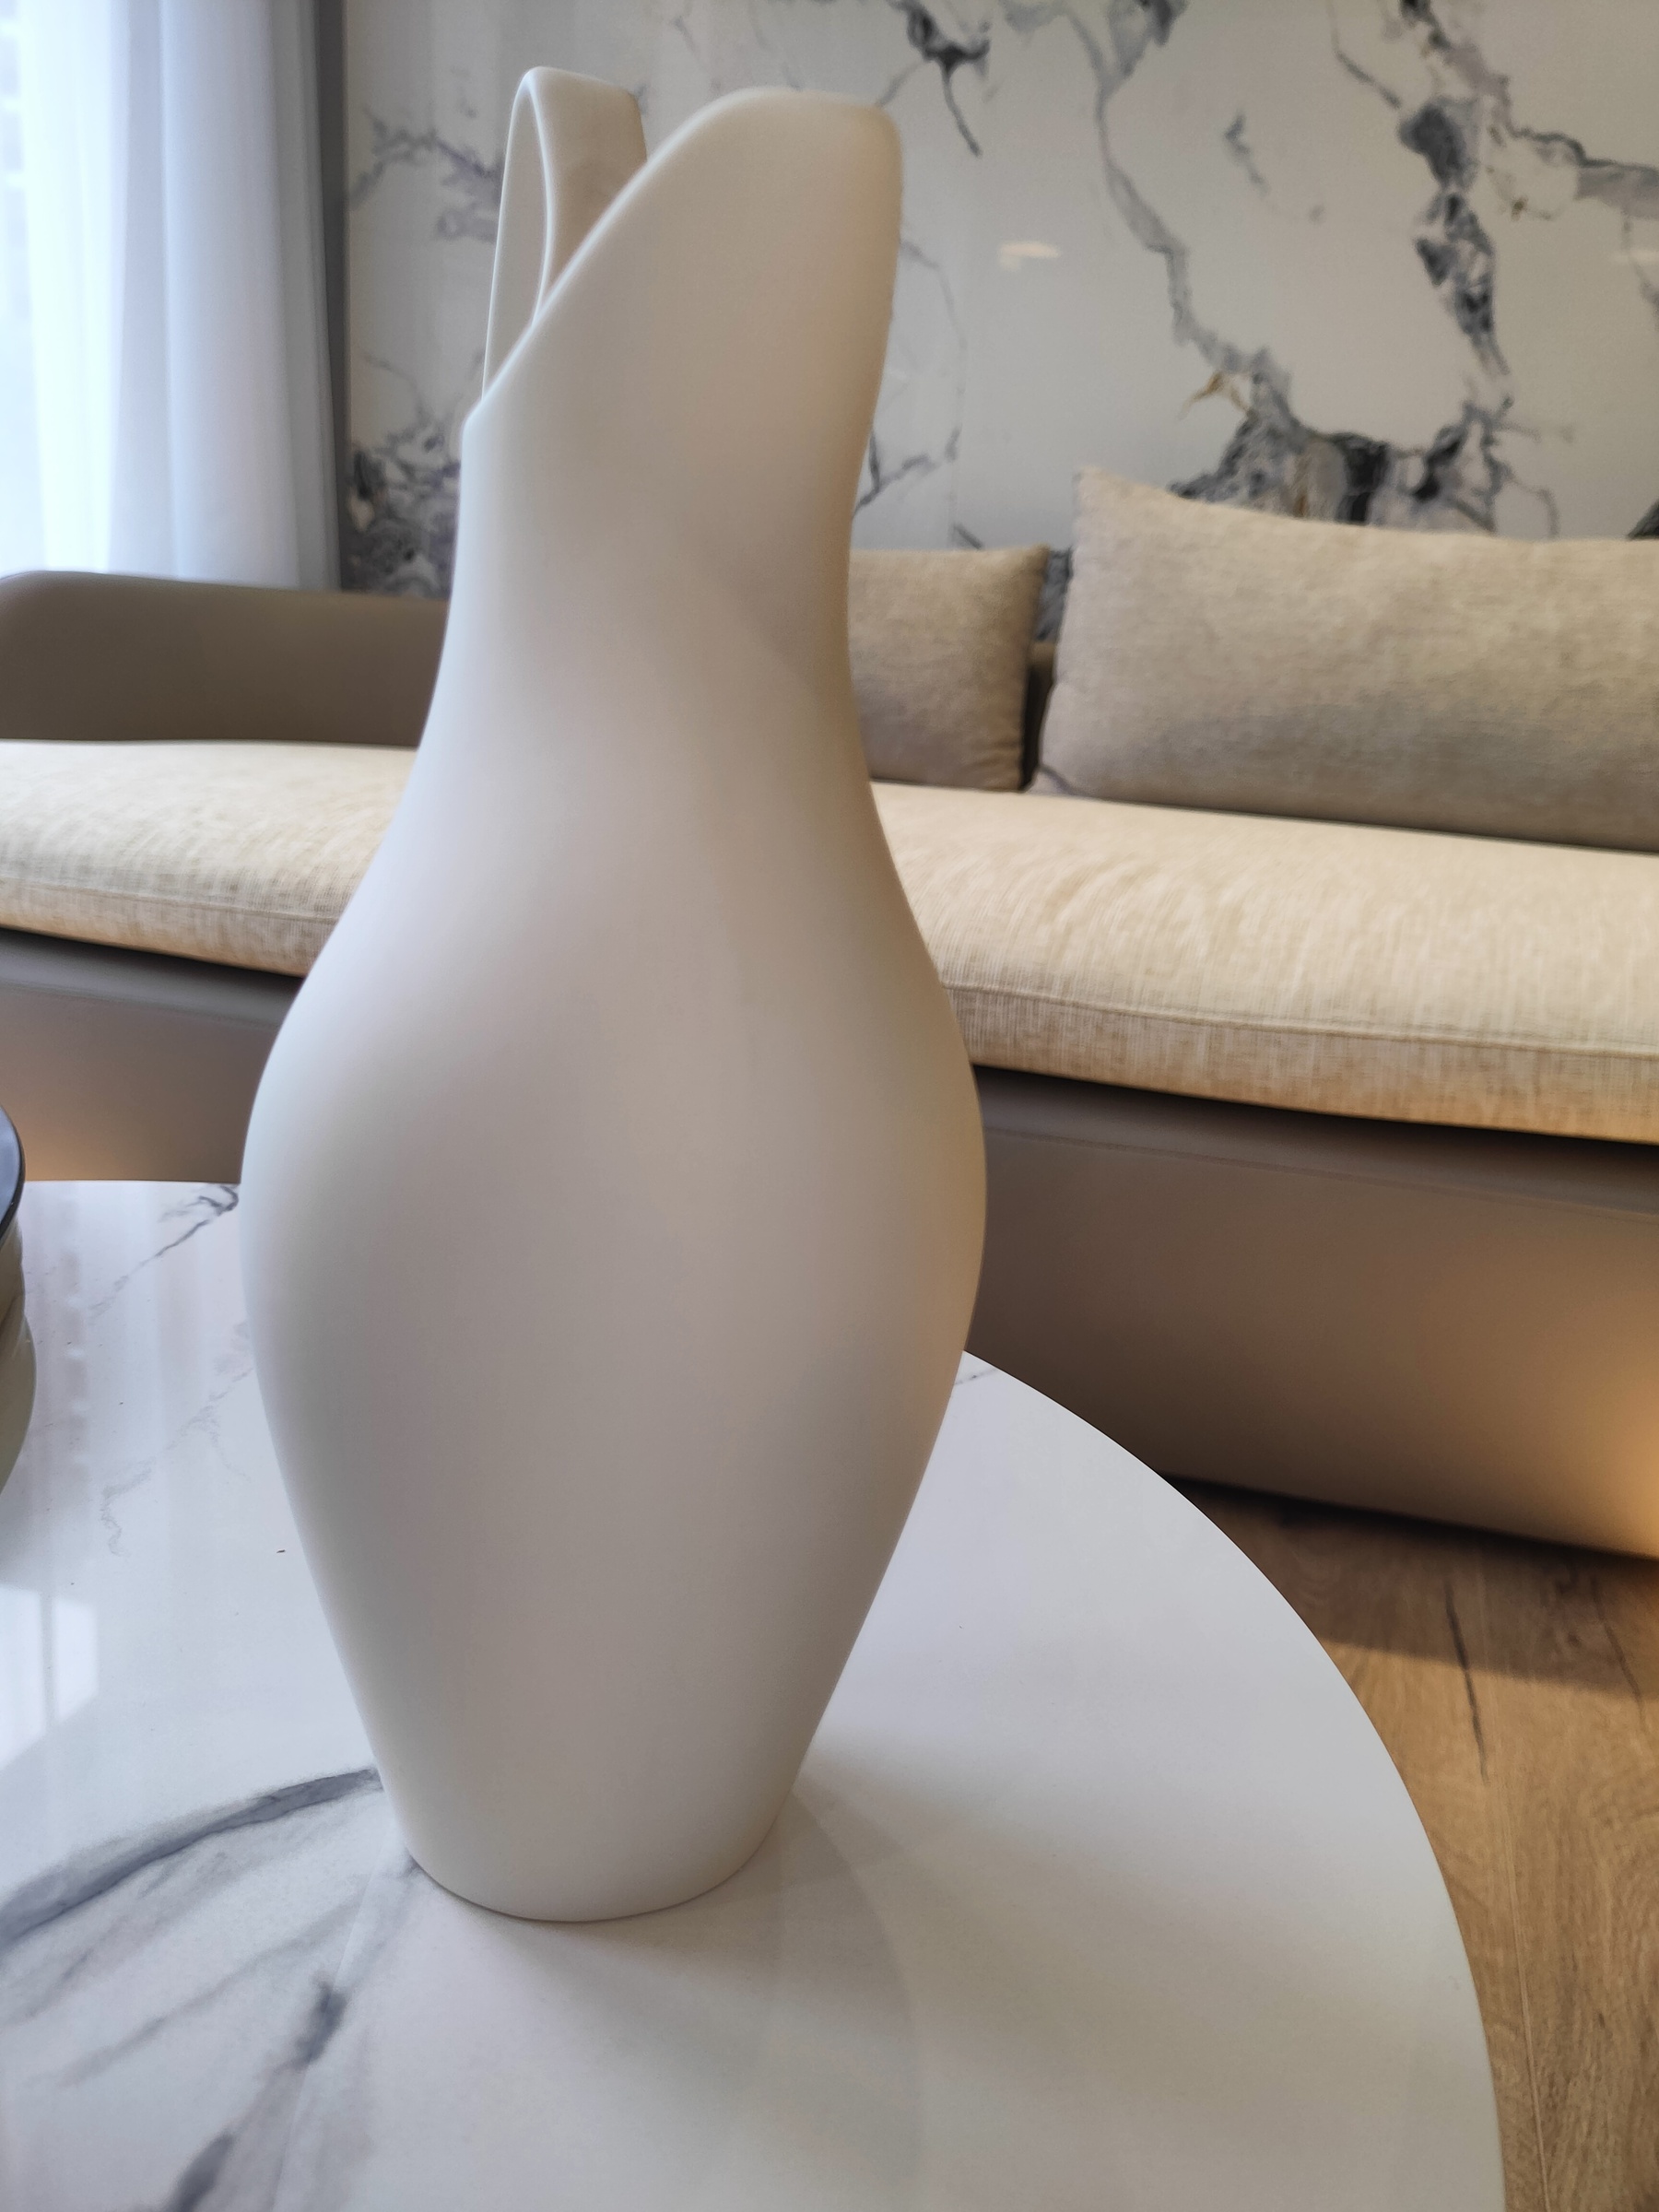 優雅細緻白曲線陶瓷花瓶Z001-CY3926W2 – YMY選貨平台| YMY居家美學